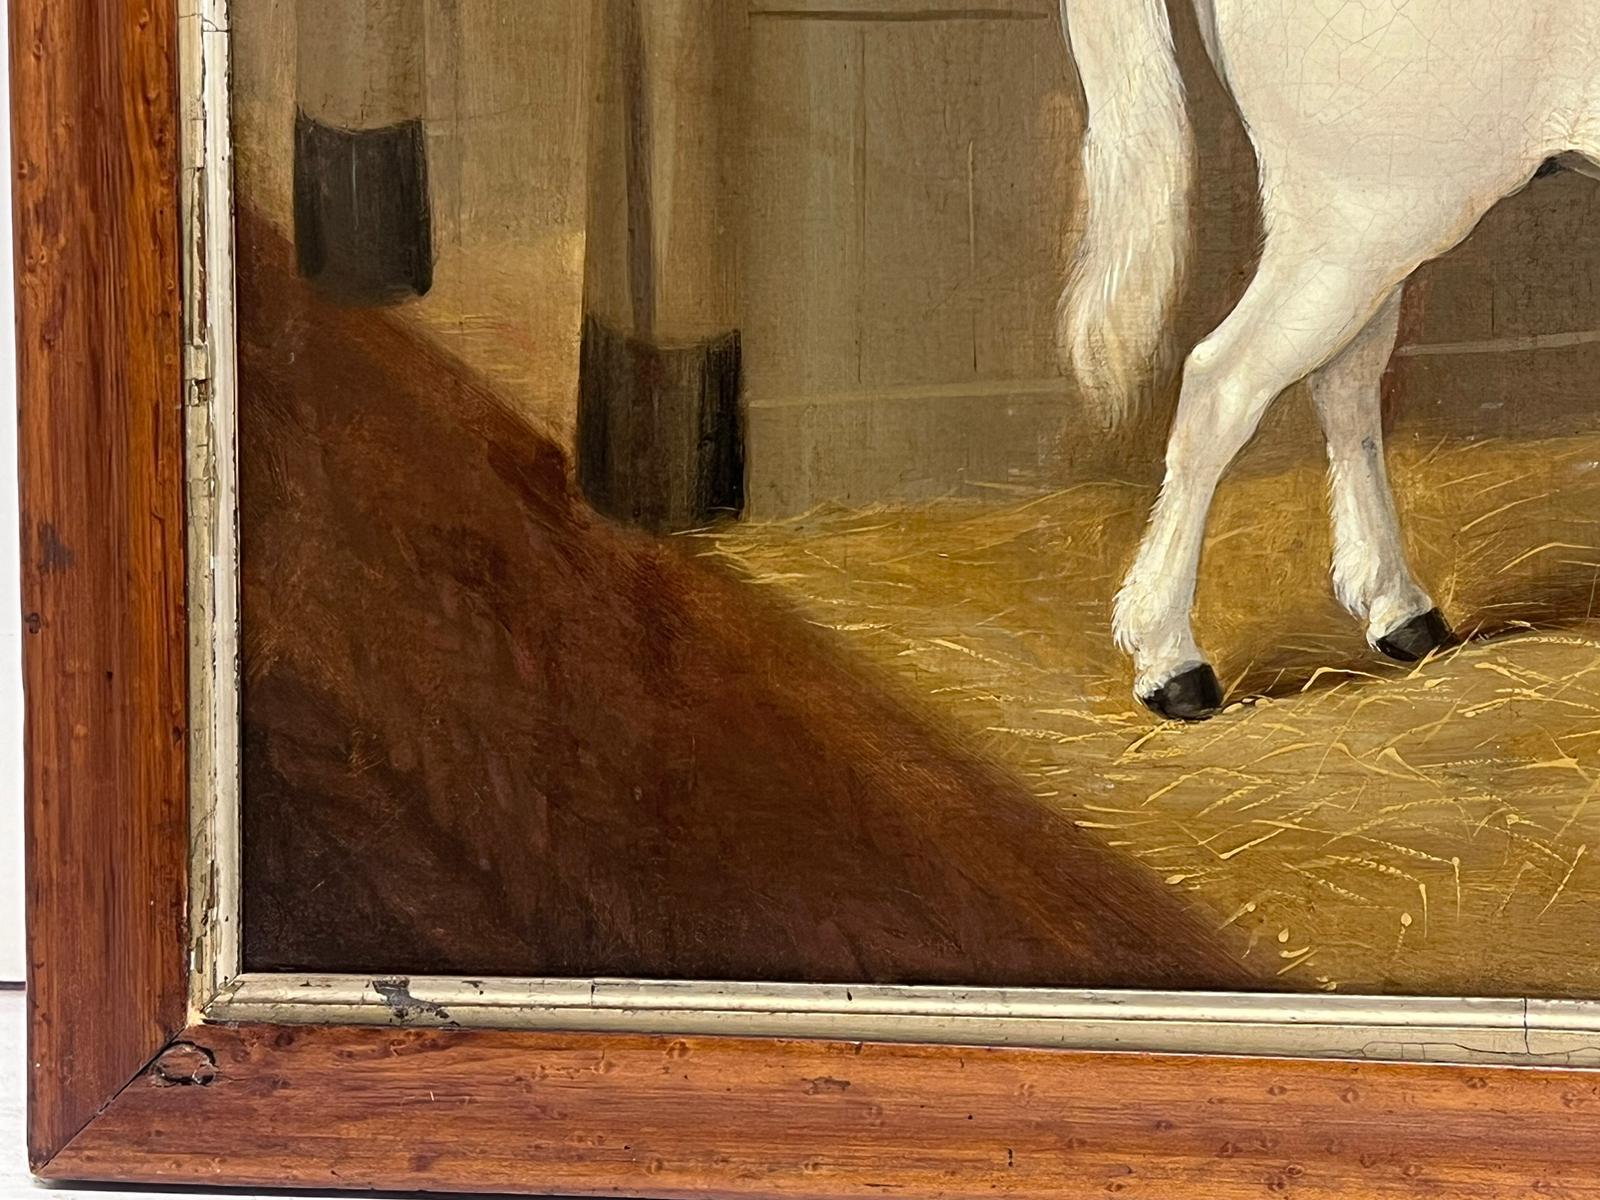 Le cheval blanc dans l'écurie
École anglaise, signé indistinctement en bas à droite
daté de 1842
signée, huile sur toile, encadrée
encadré : 24 x 29 pouces
toile : 21.5 x 26.5 pouces
provenance : collection privée
état : très bon et sain